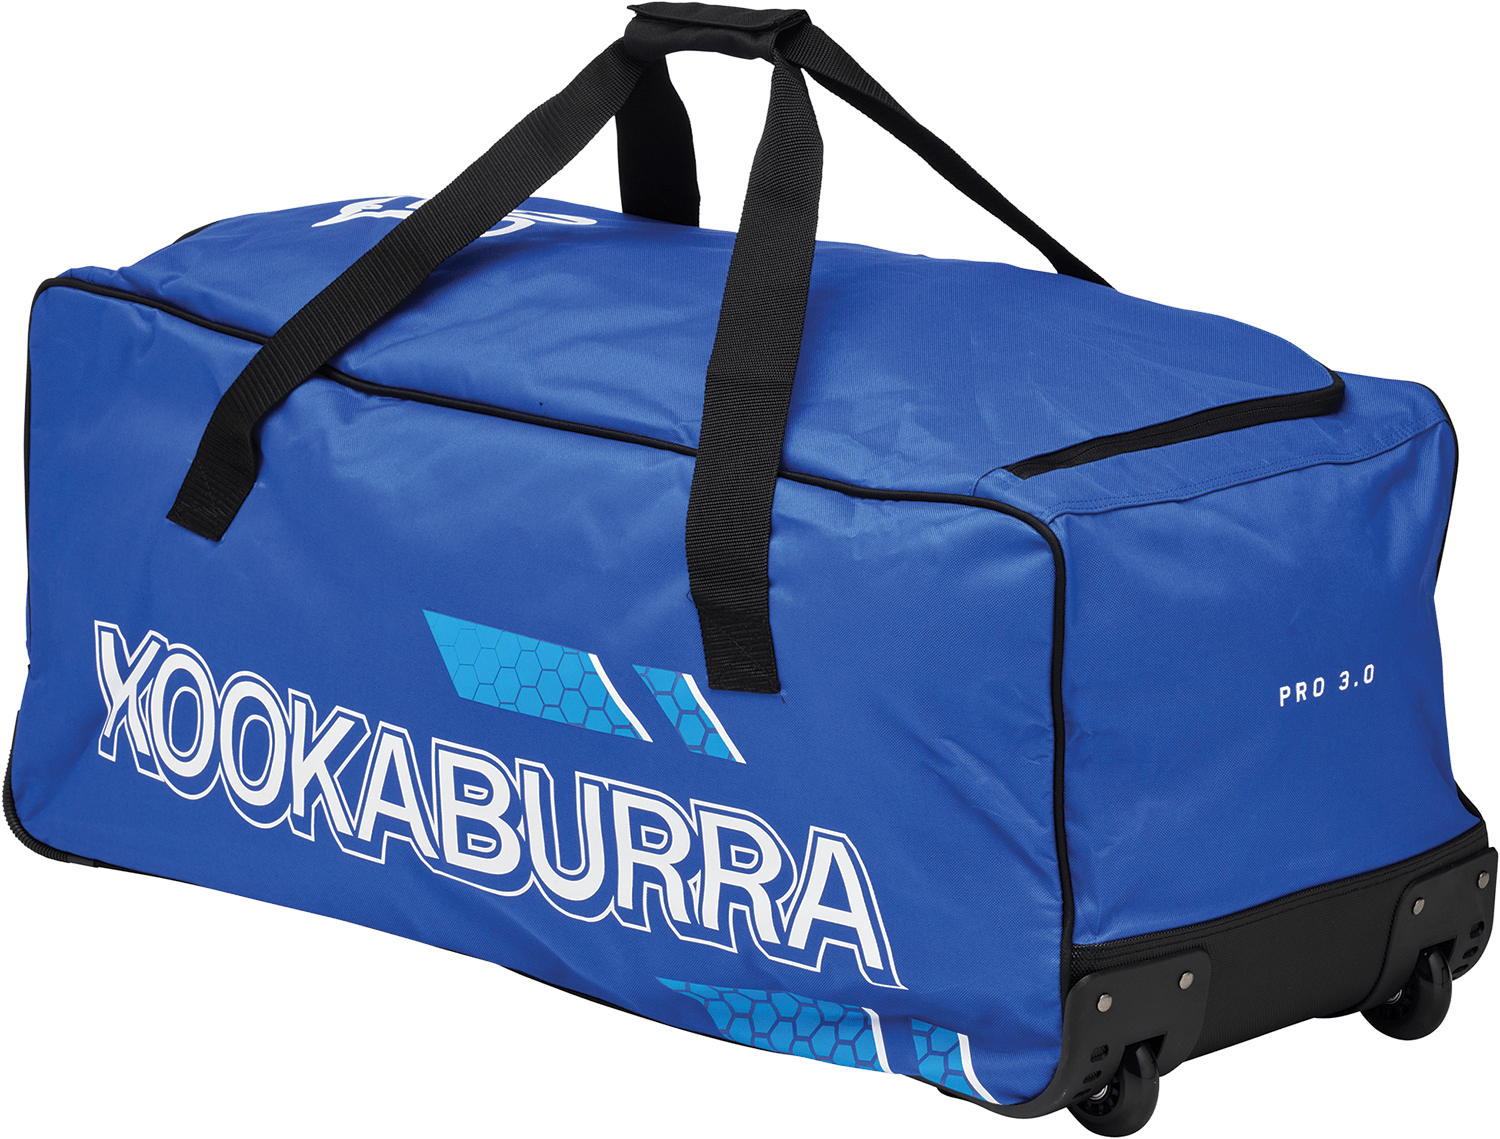 Kookaburra Cricket Bags Blue Kookaburra 3.0 Wheelie Cricket Bag